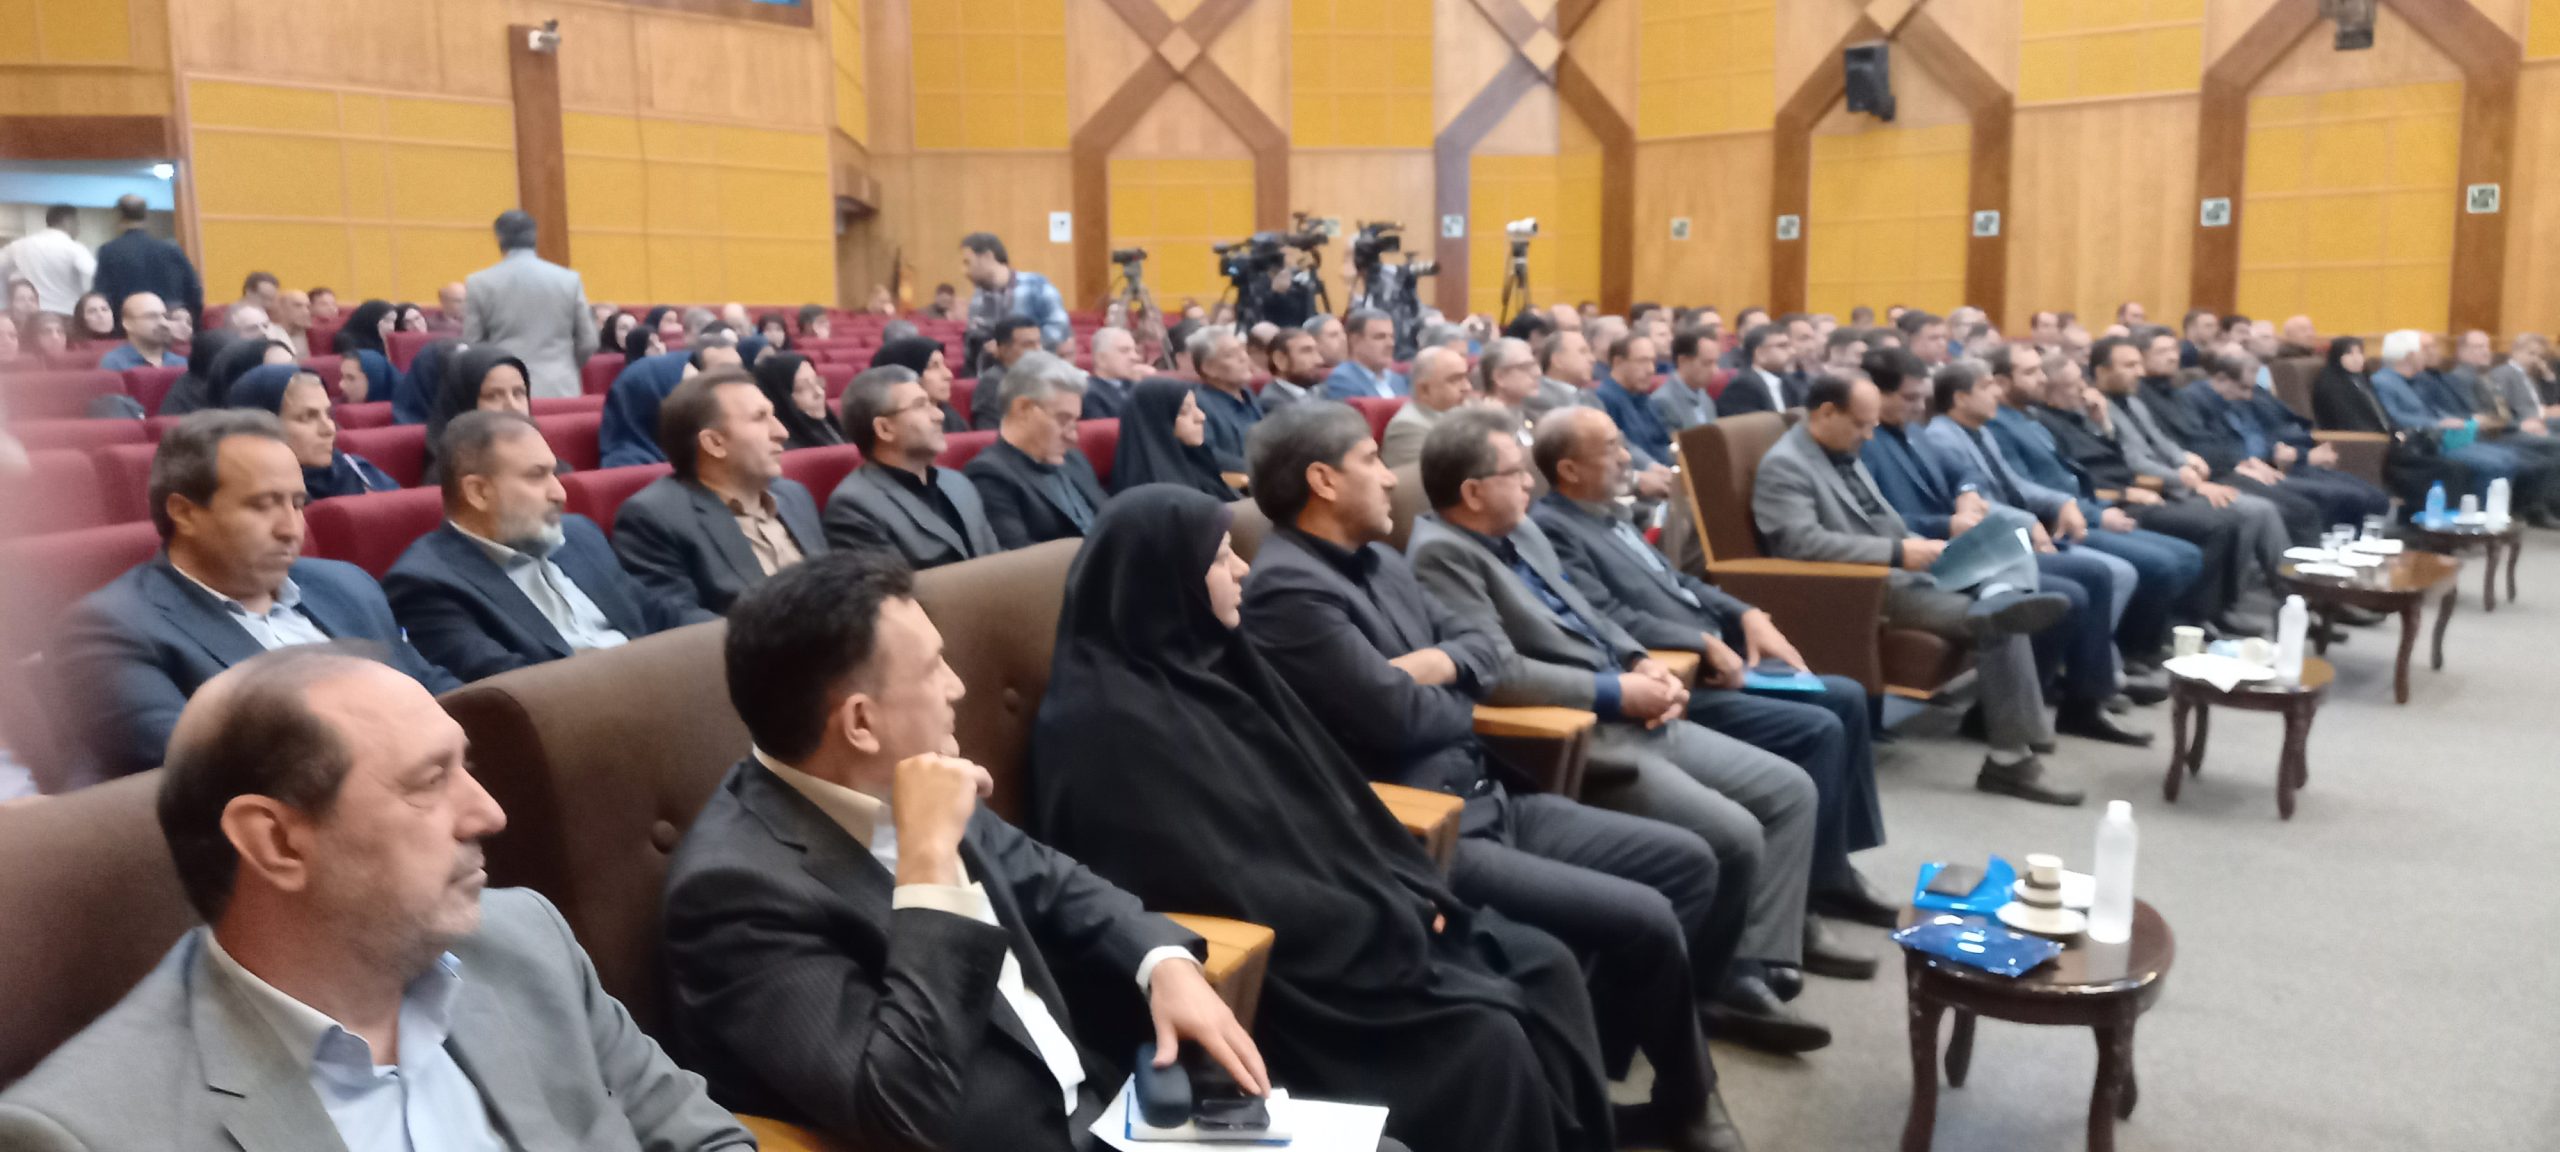 جزئیات هشتمین همایش ملی کار/ لایحه امنیت شغلی کارگران یادگار رئیس جمهور شهید است/مجلس تایید کند